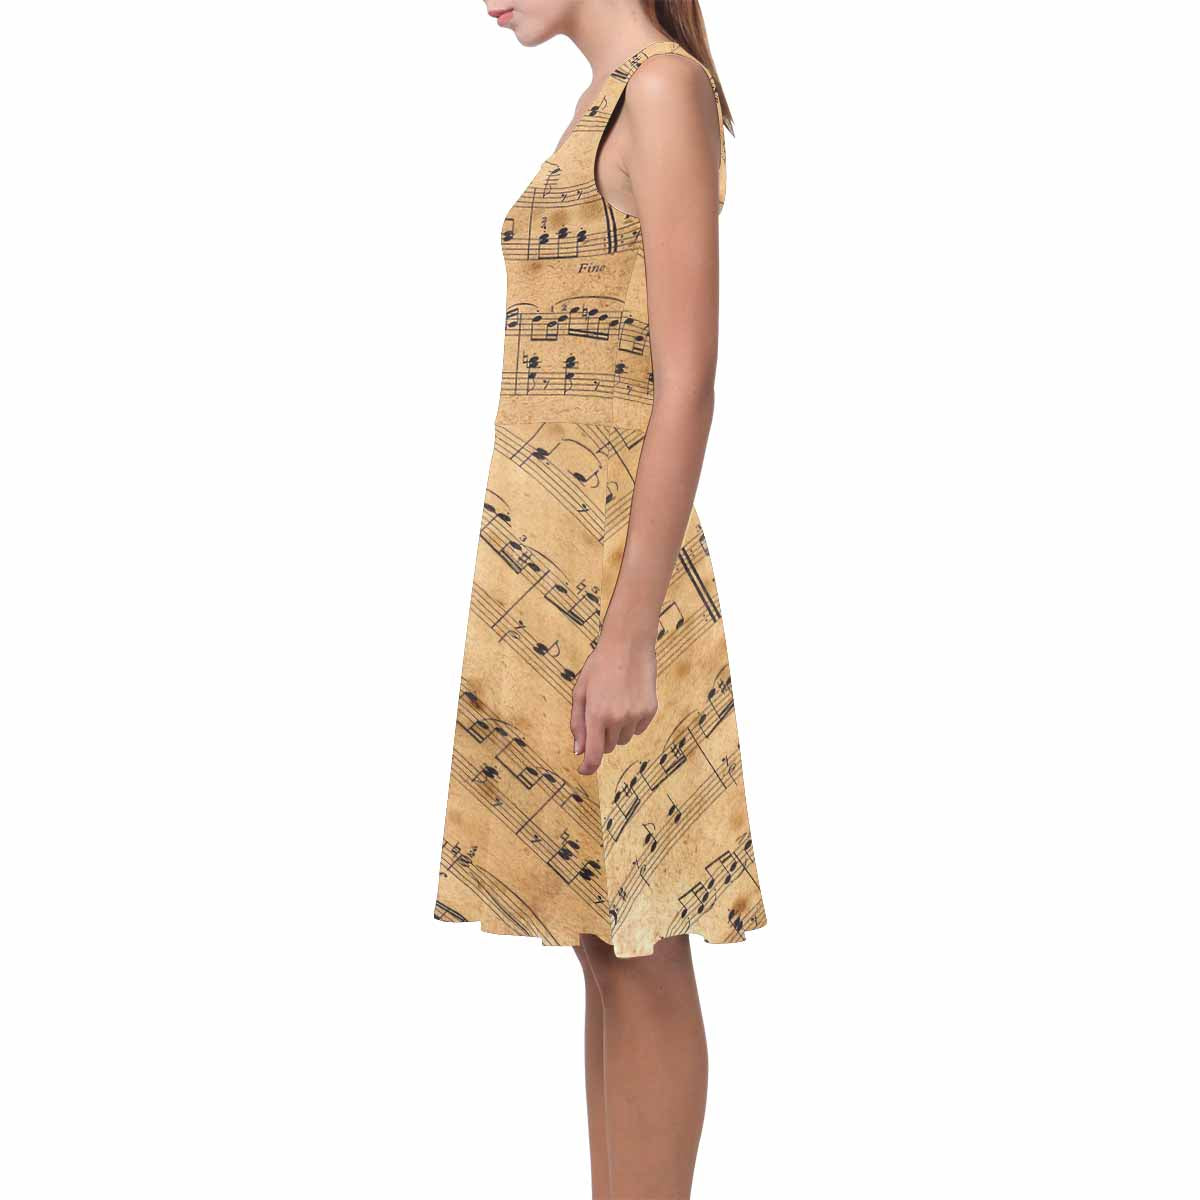 Antique General summer dress, MODEL 09534, design 34